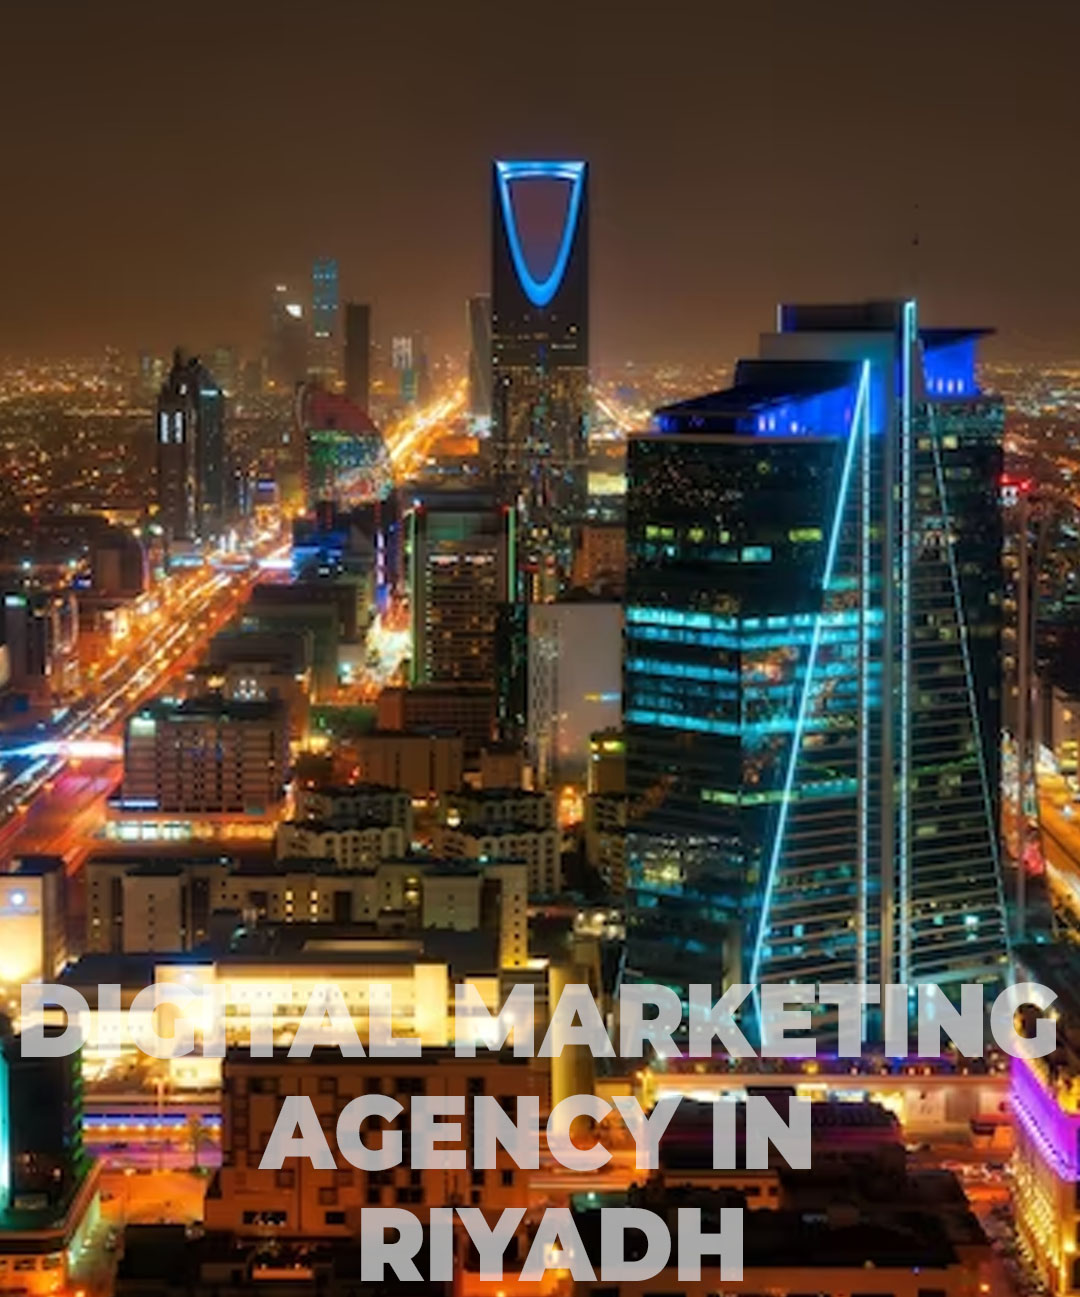 Digital Marketing Agency in Riyadh